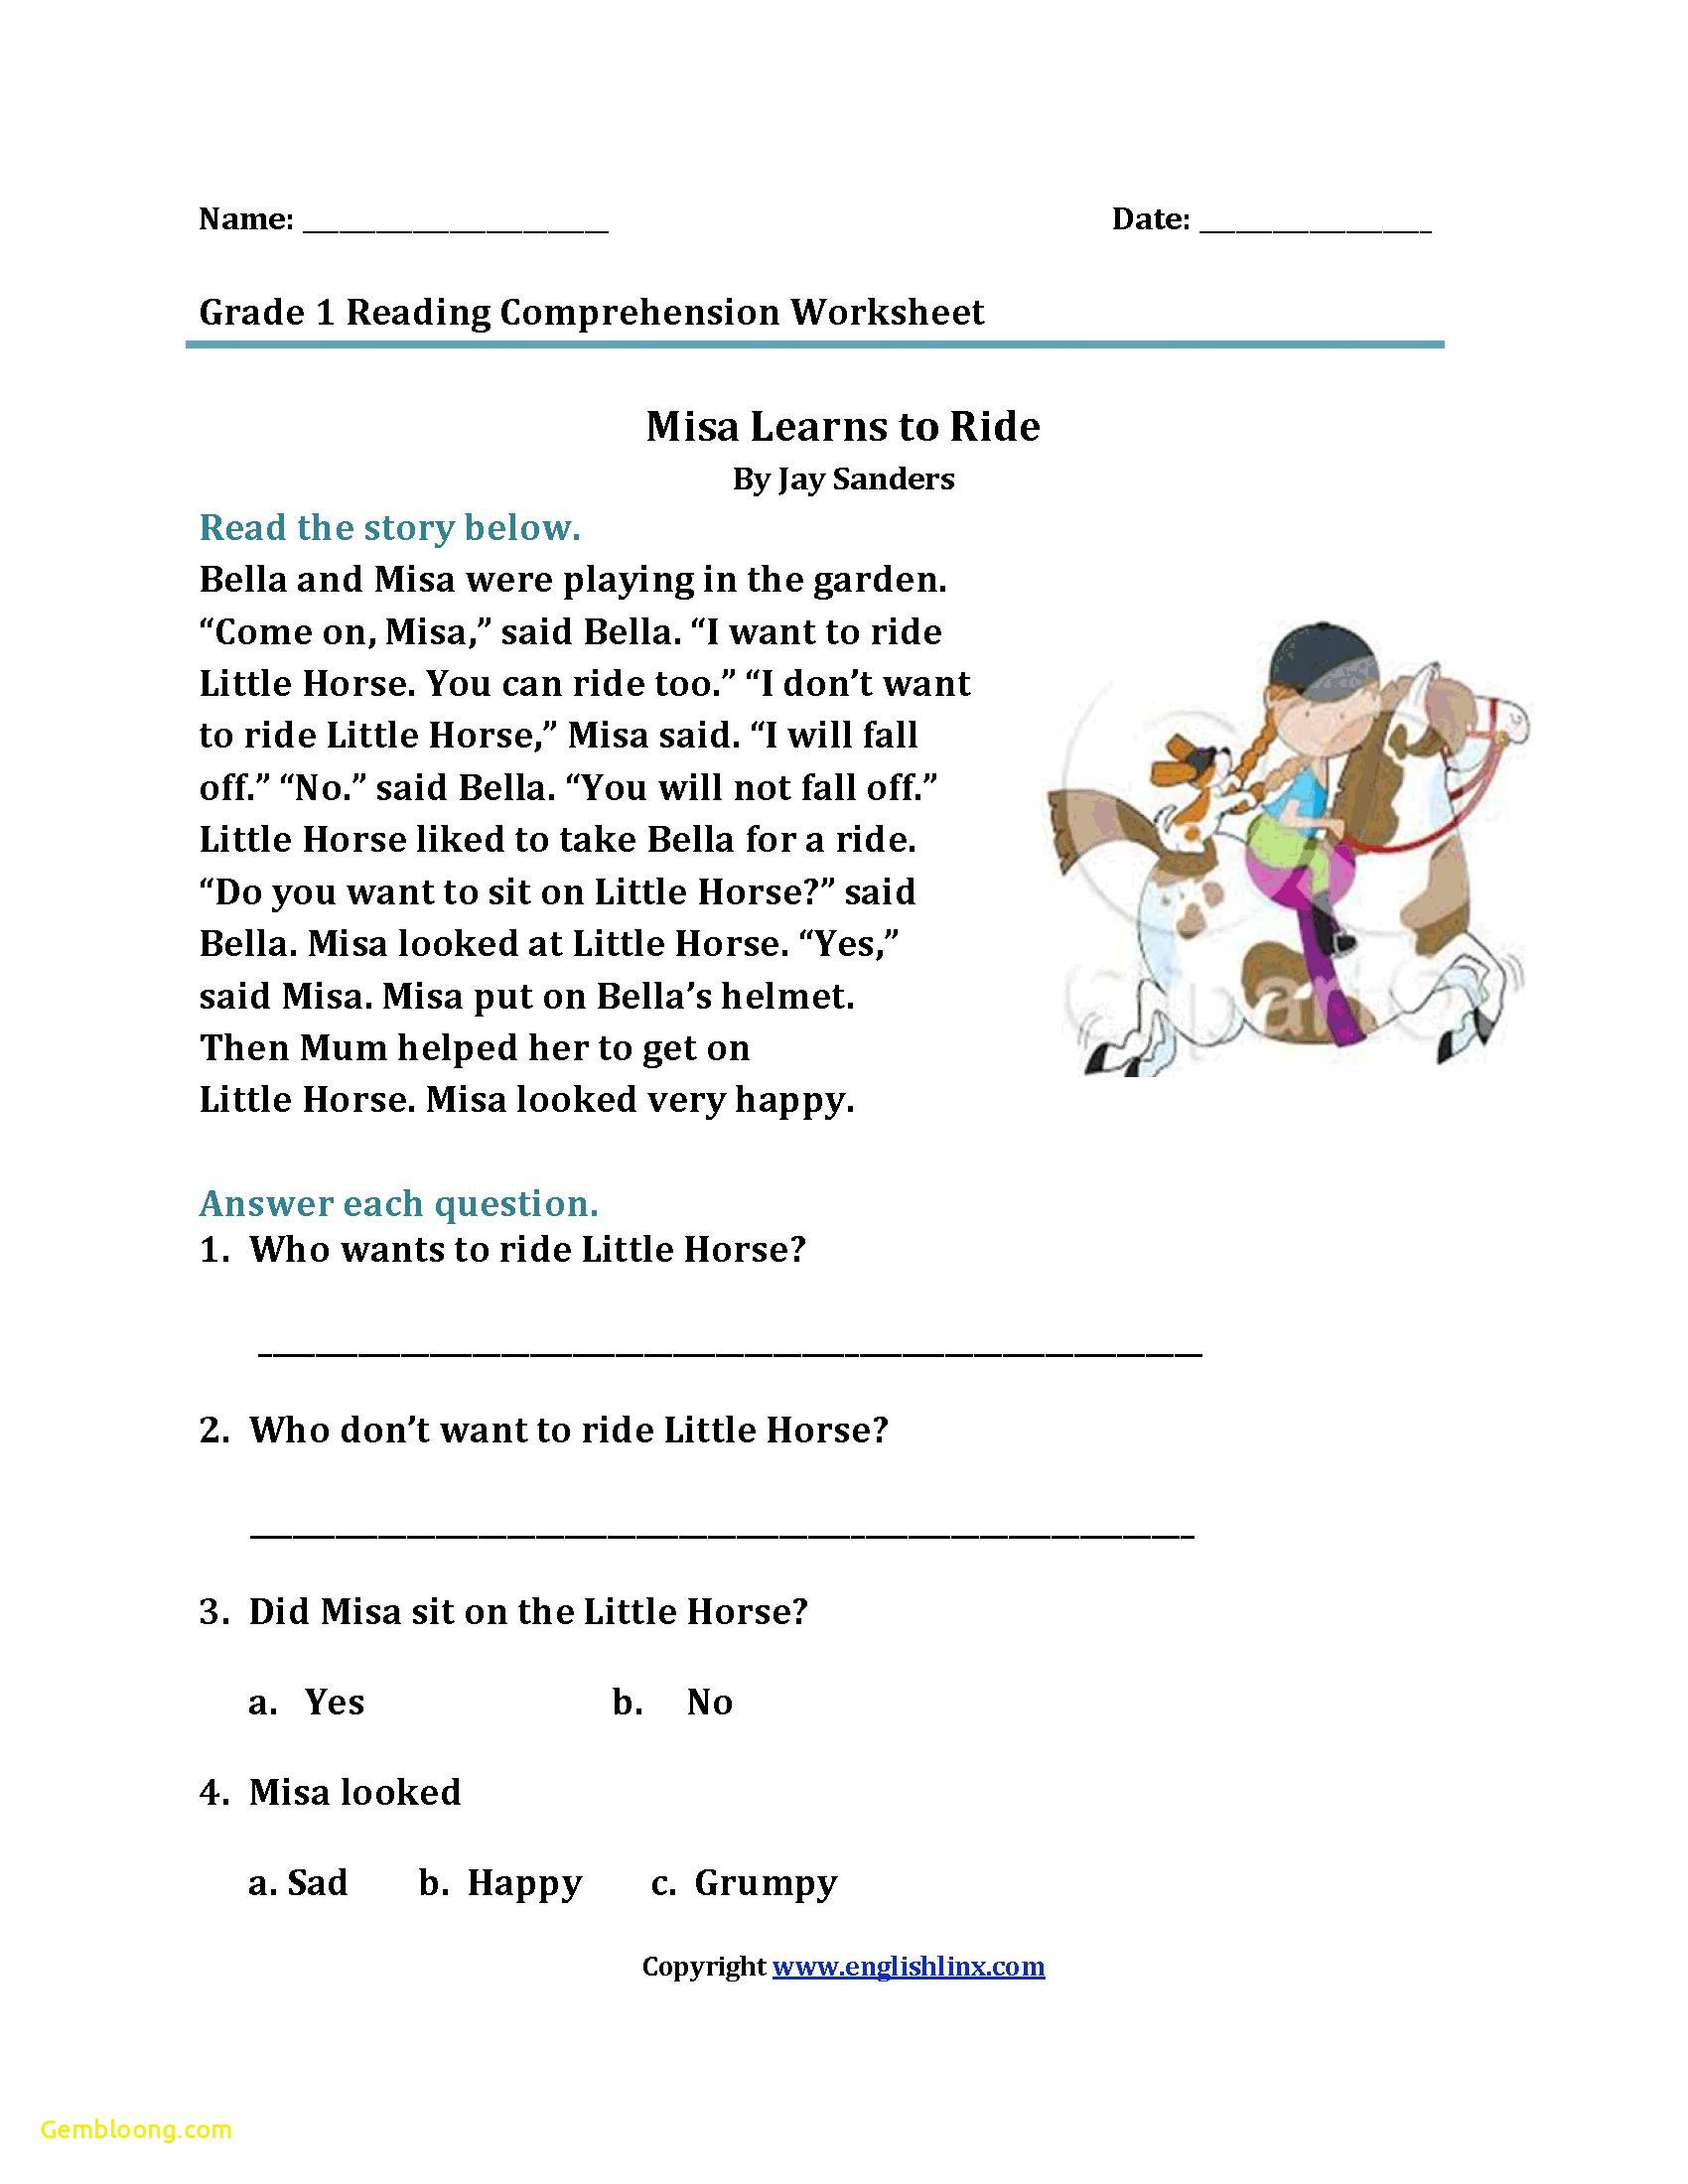 Reading Comprehension Worksheets For 1St Grade - Cramerforcongress | Free Printable Reading Comprehension Worksheets